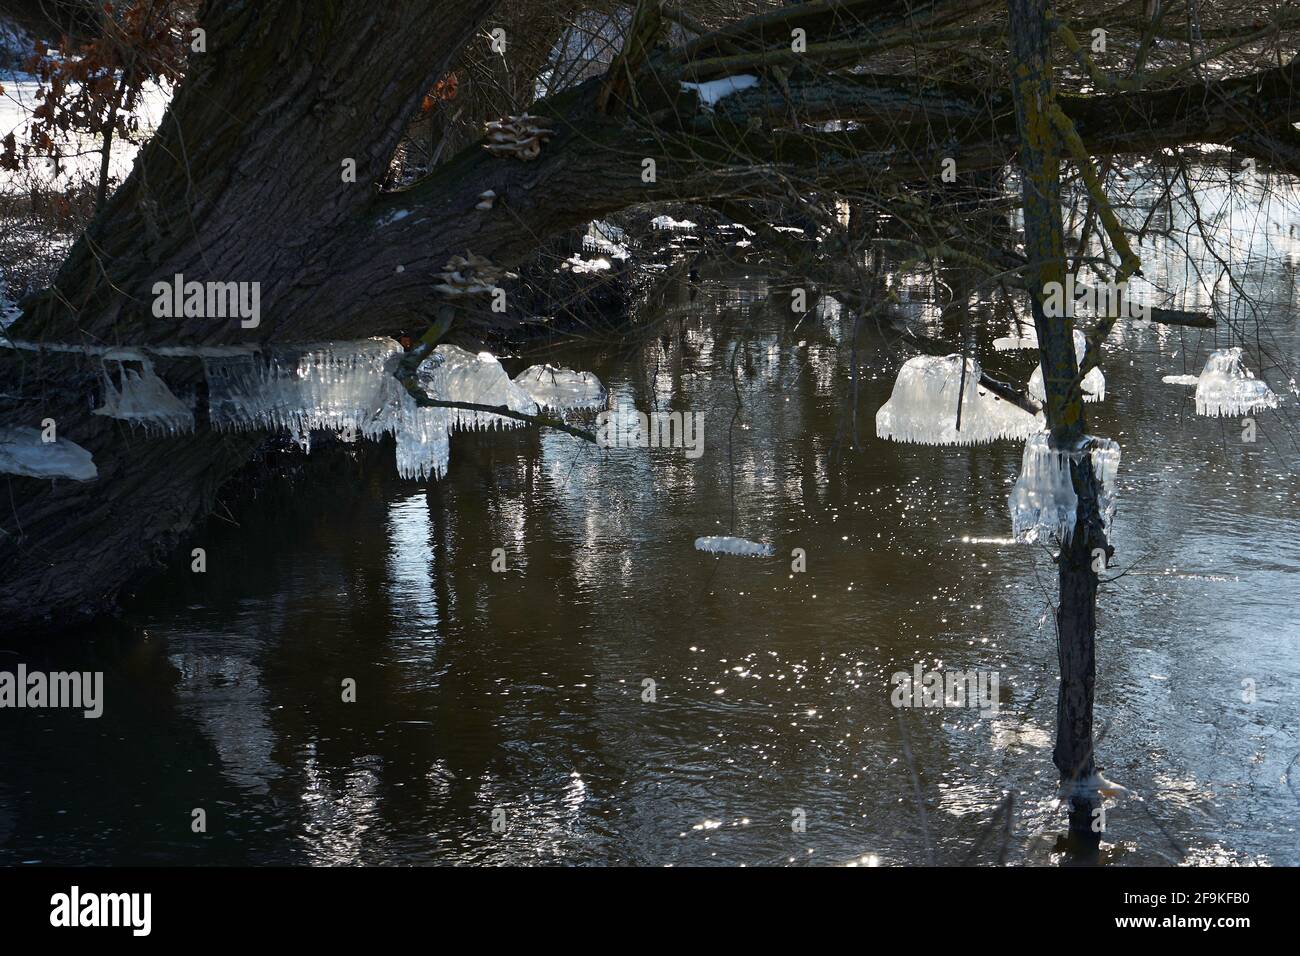 Bizarre Eisformation am Stamm einer Weide (Salix), Eiszapfen, durch absinkendes Hochwasser entstanden, Fluß Wetter, Wetterau, Ossenheim, Hessen Stock Photo